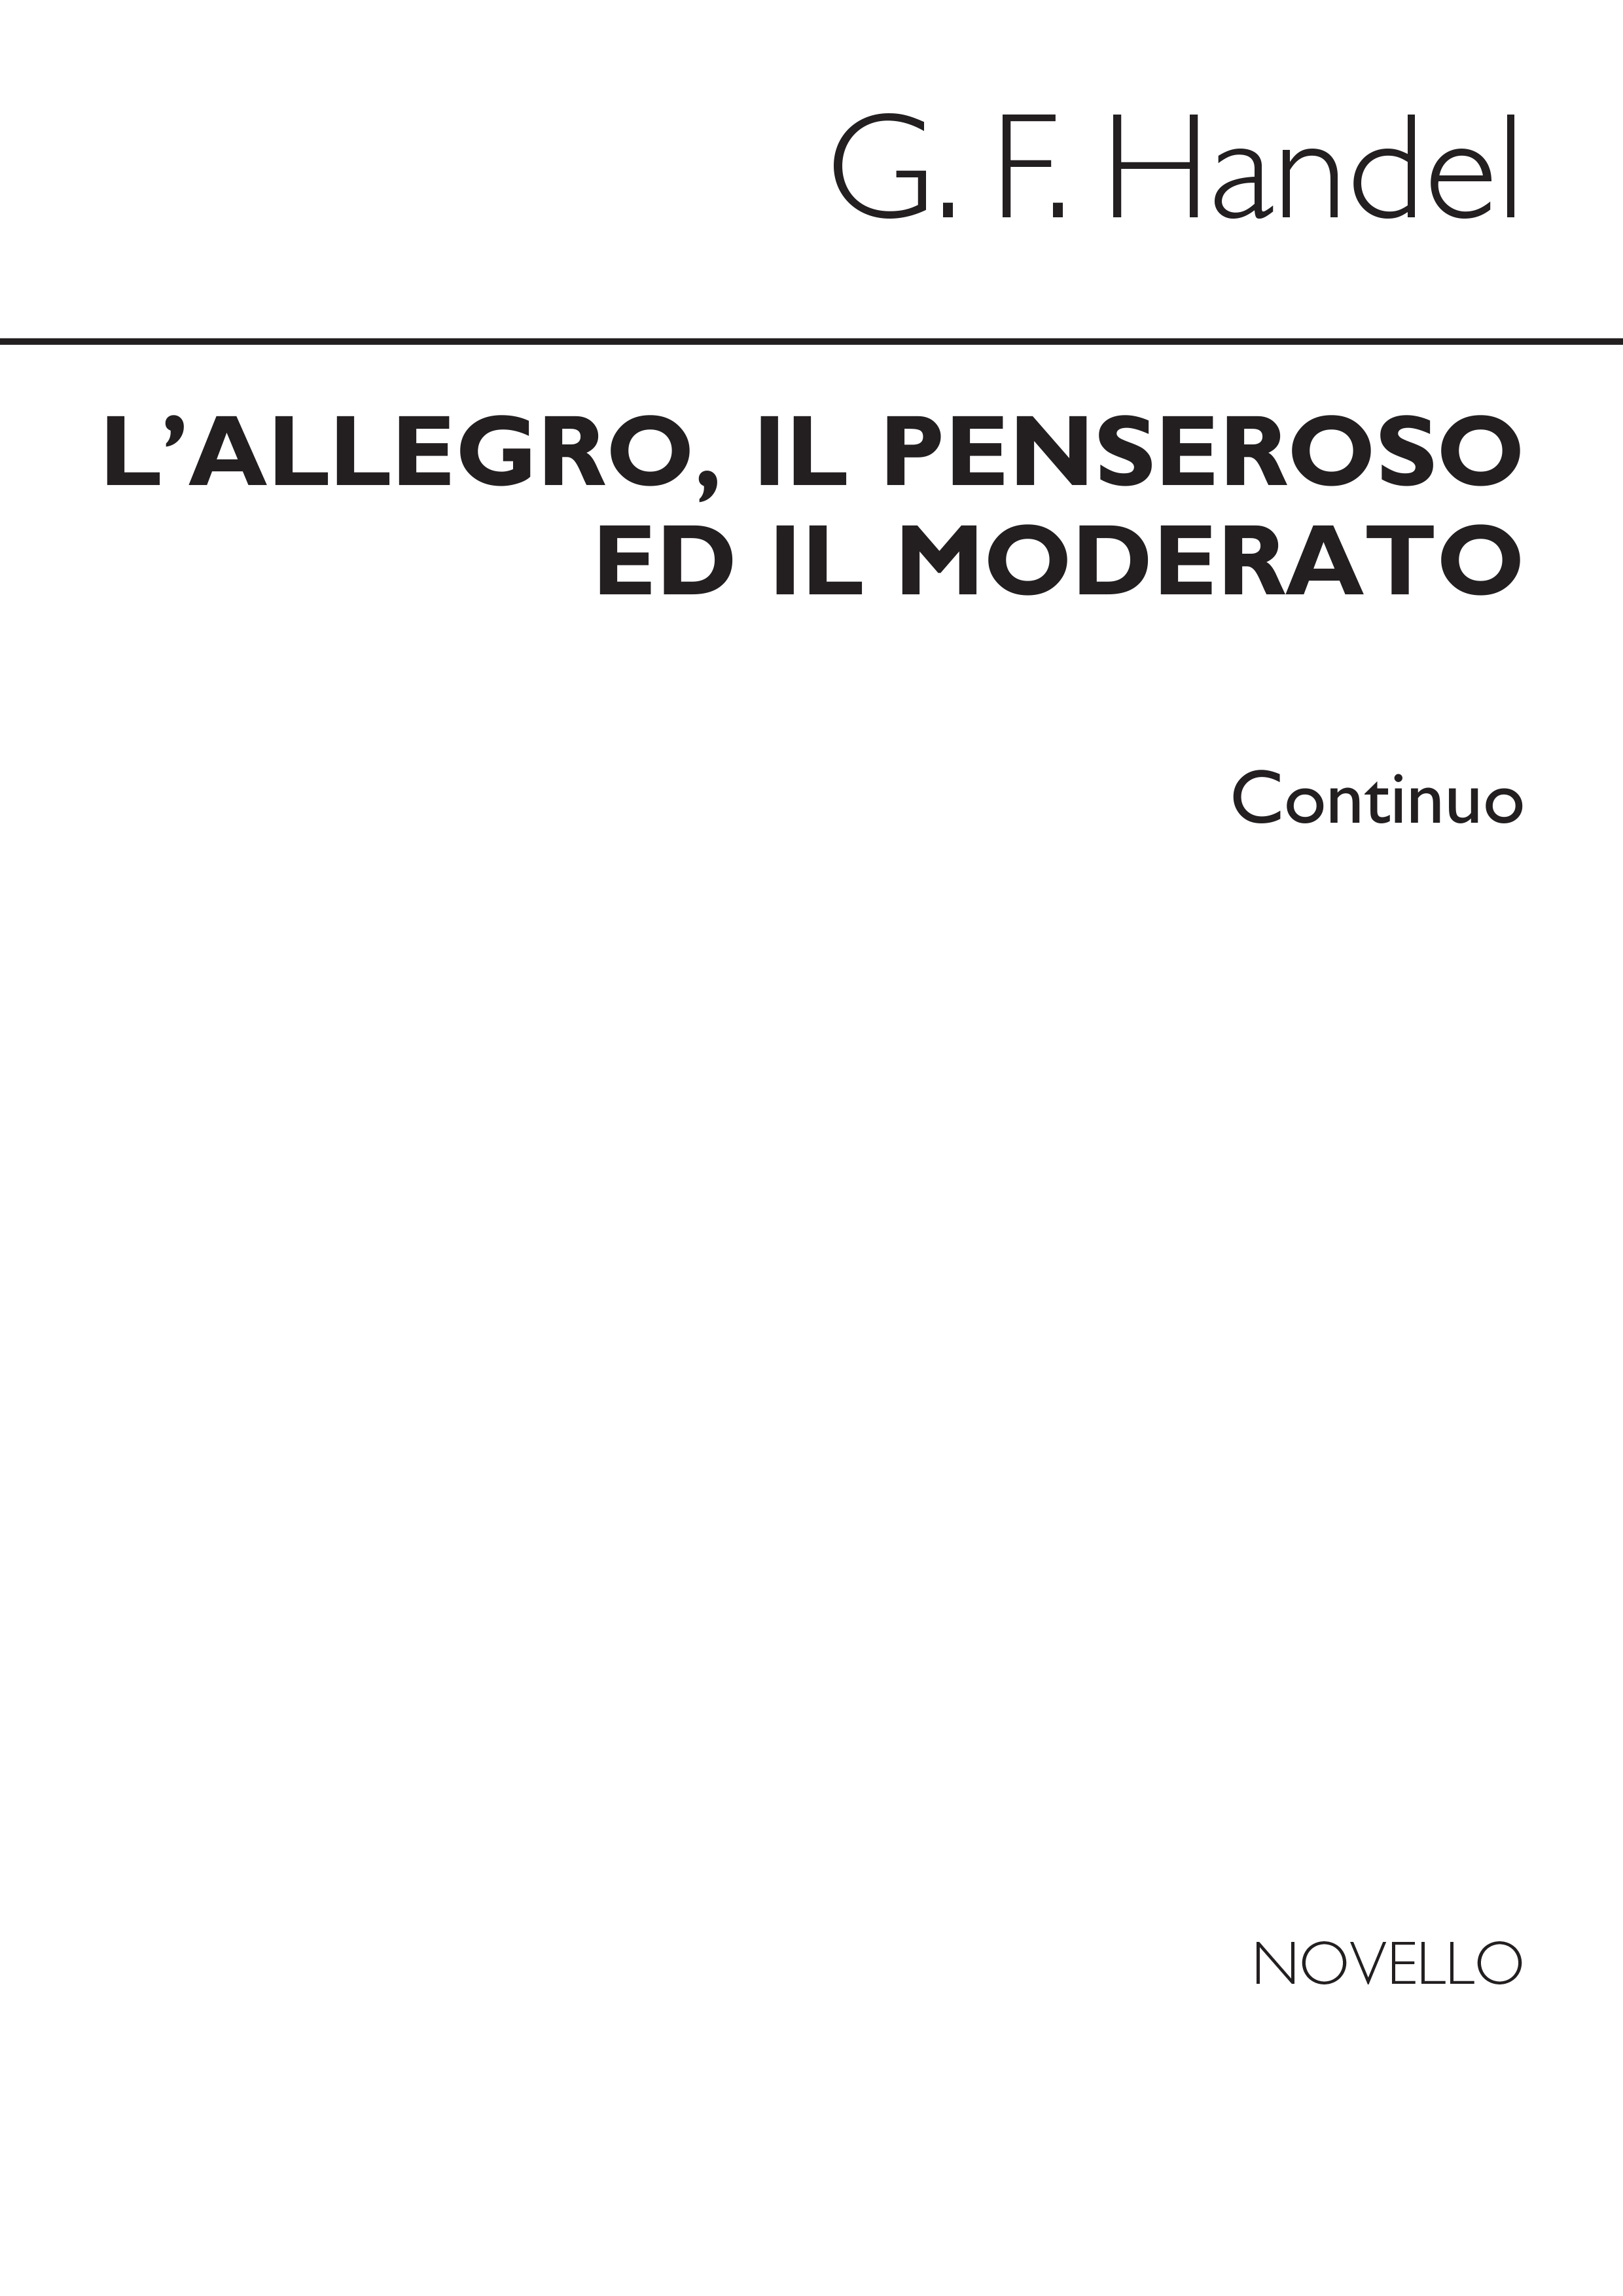 Georg Friedrich Hndel: L'Allegro  Il Penseroso Ed Il Moderato: SATB: Part